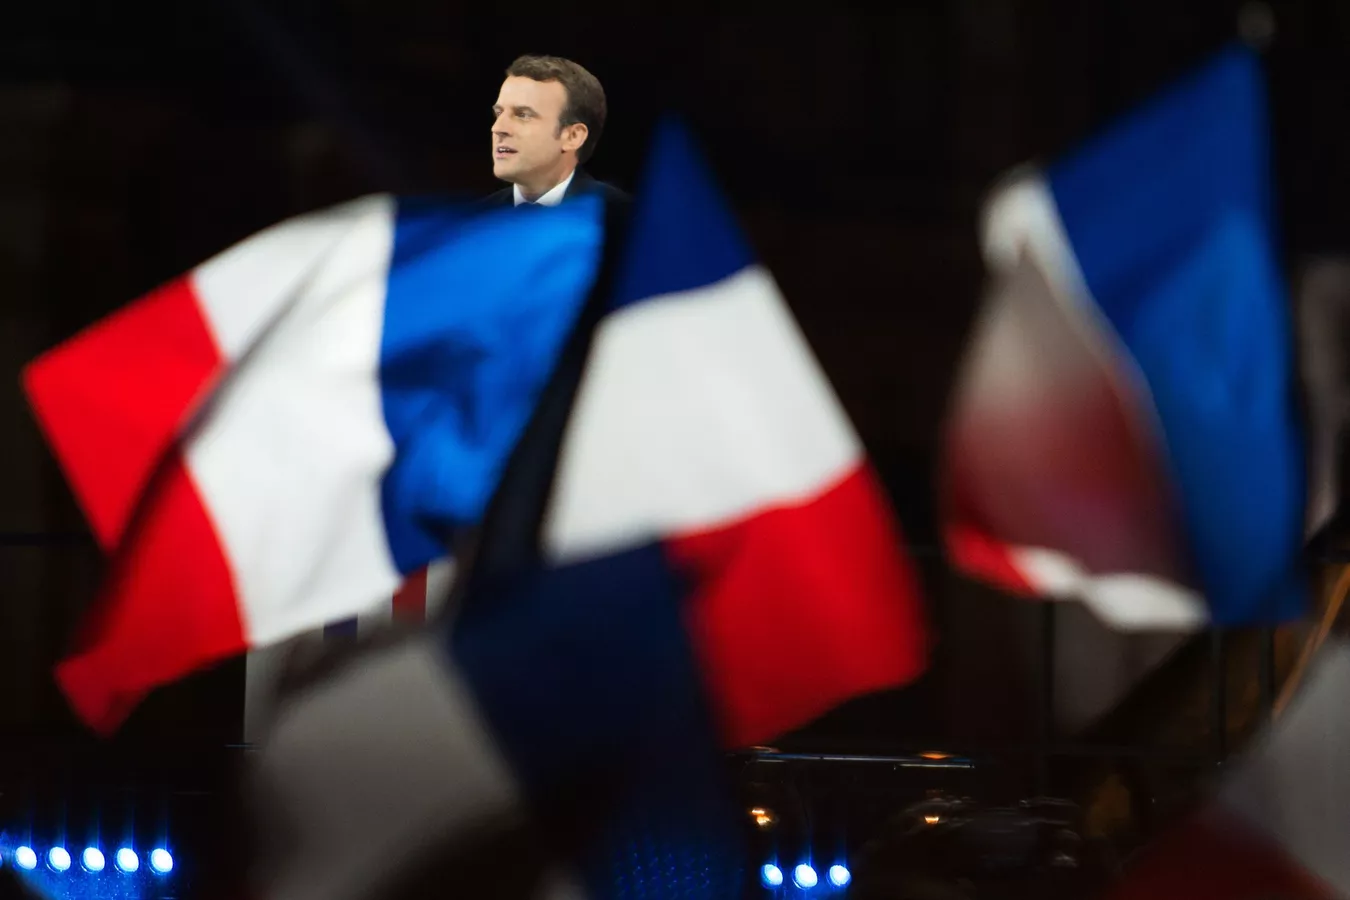 الانتخابات التشريعية الفرنسية: ماكرون في مواجهة شرسة لليسار الراديكالي واليمين المتطرف